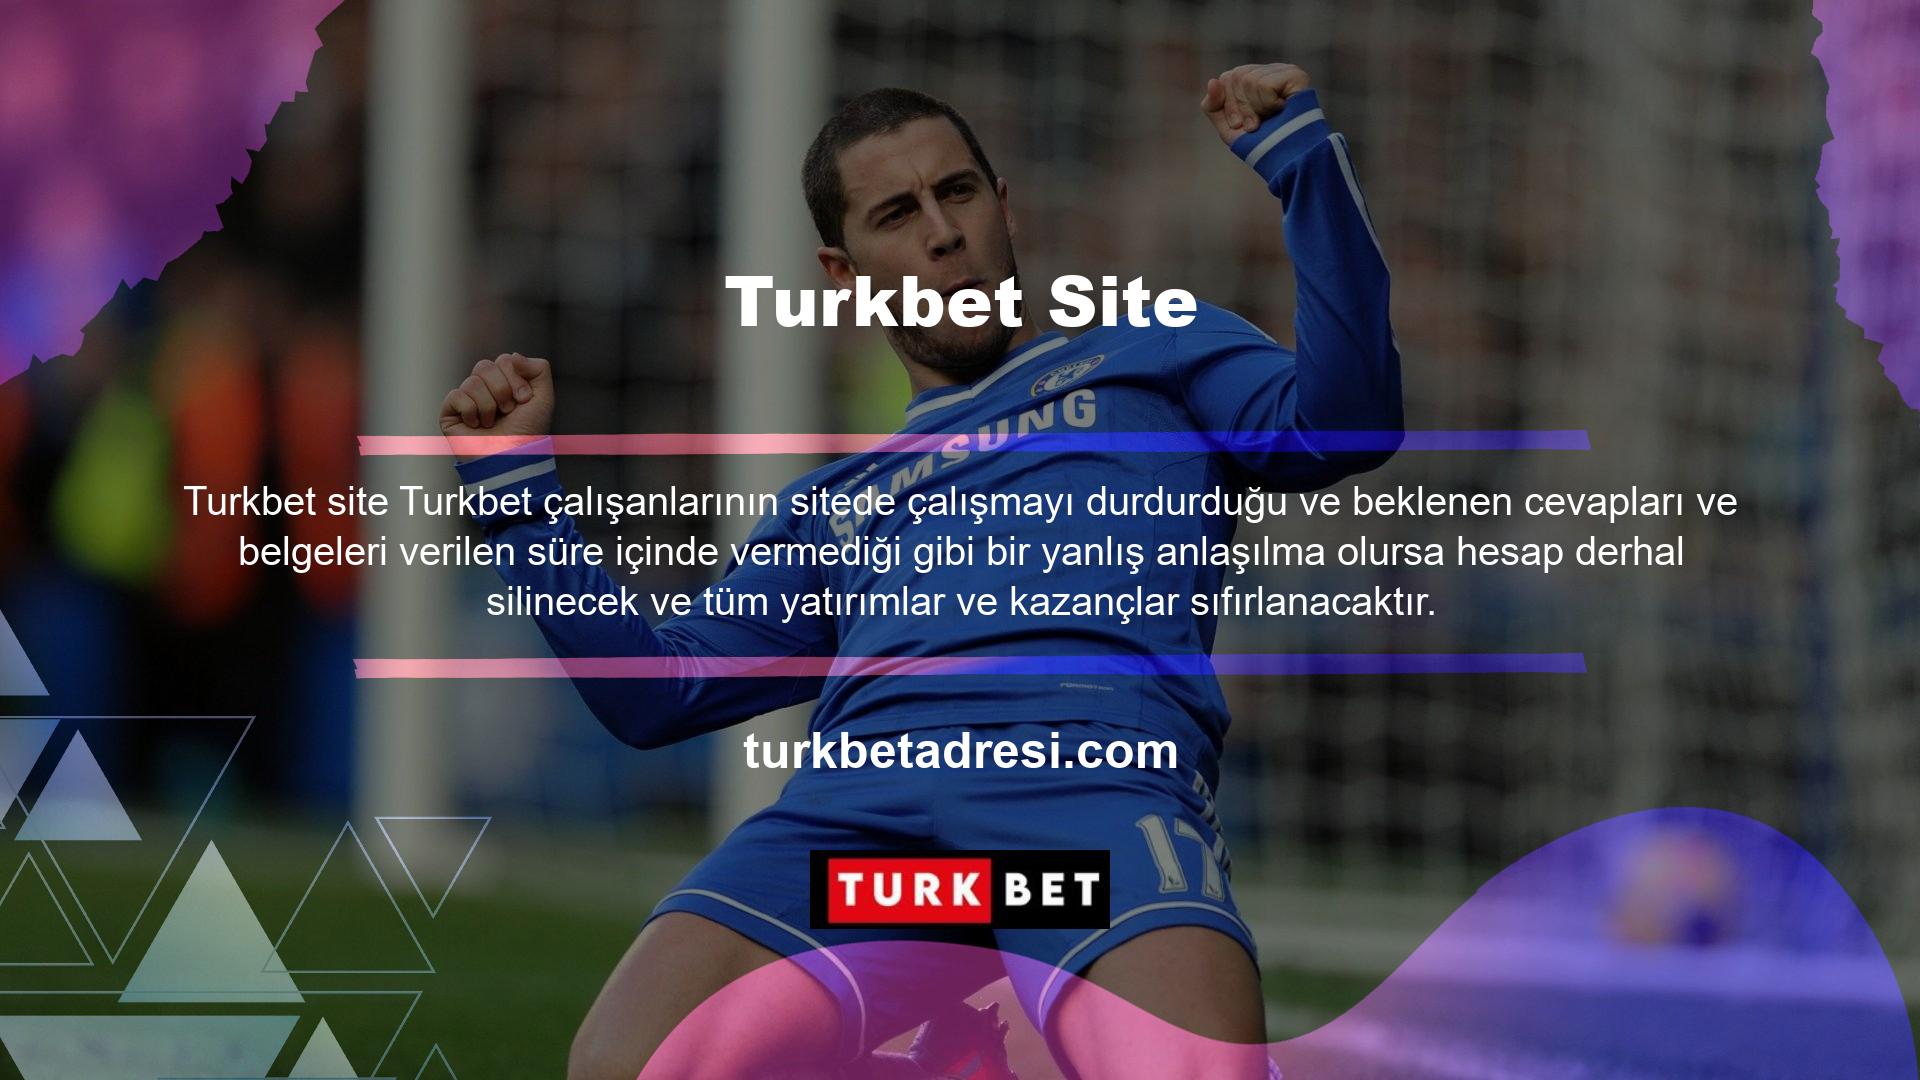 Ayrıca Turkbet, kullanıcının ihtiyacına göre hesaba belirli kısıtlamalar getirme seçeneği de sunmaktadır